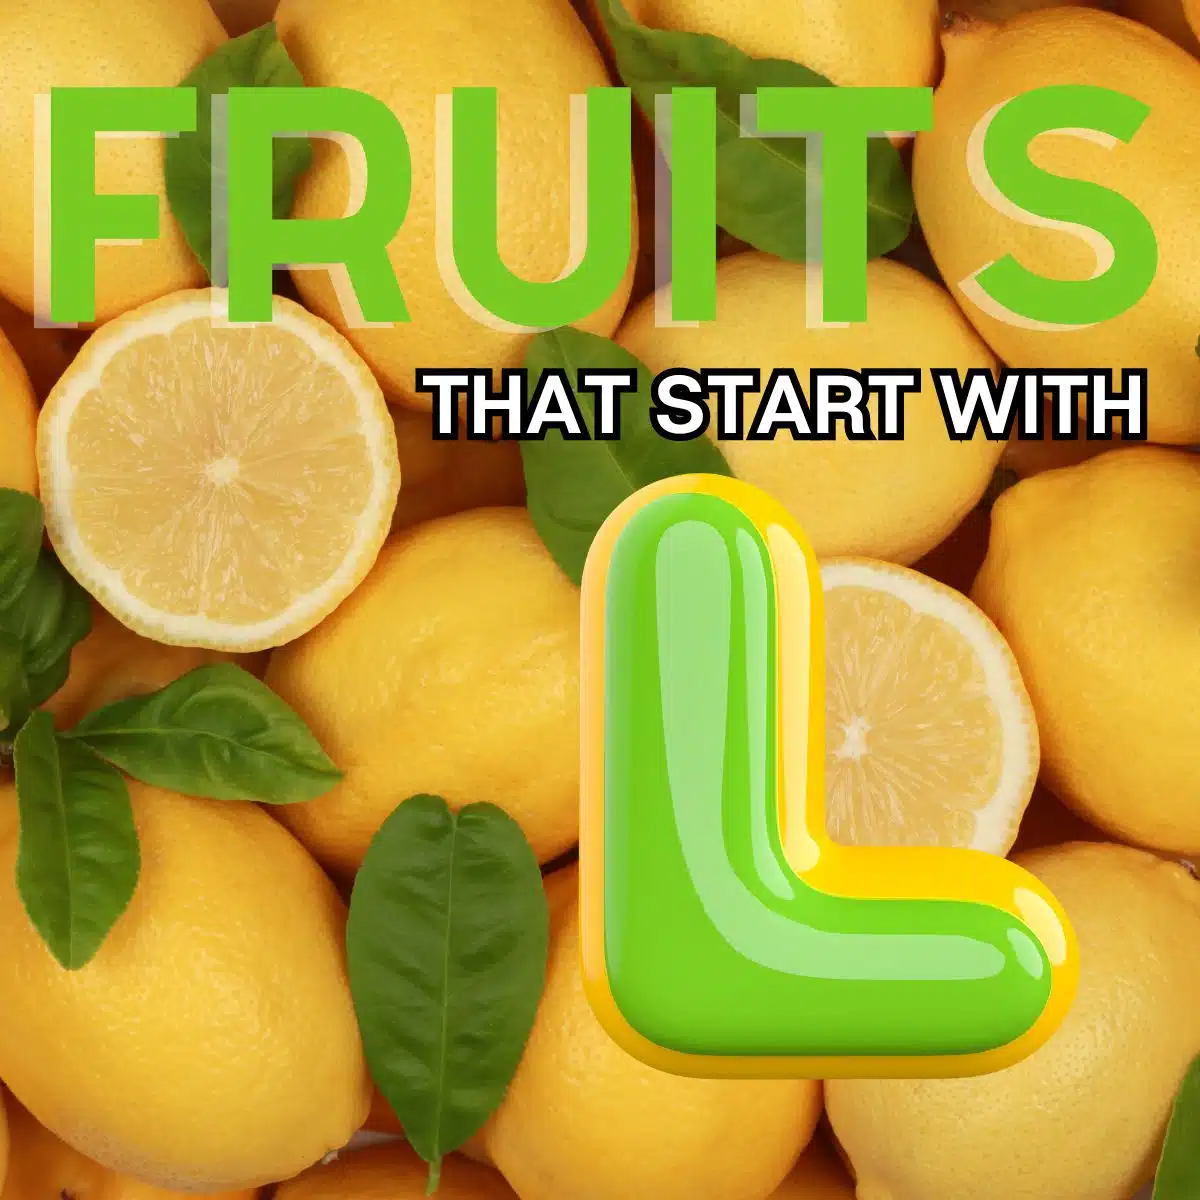 문자 L로 시작하고 레몬이 특징인 과일의 정사각형 이미지입니다.